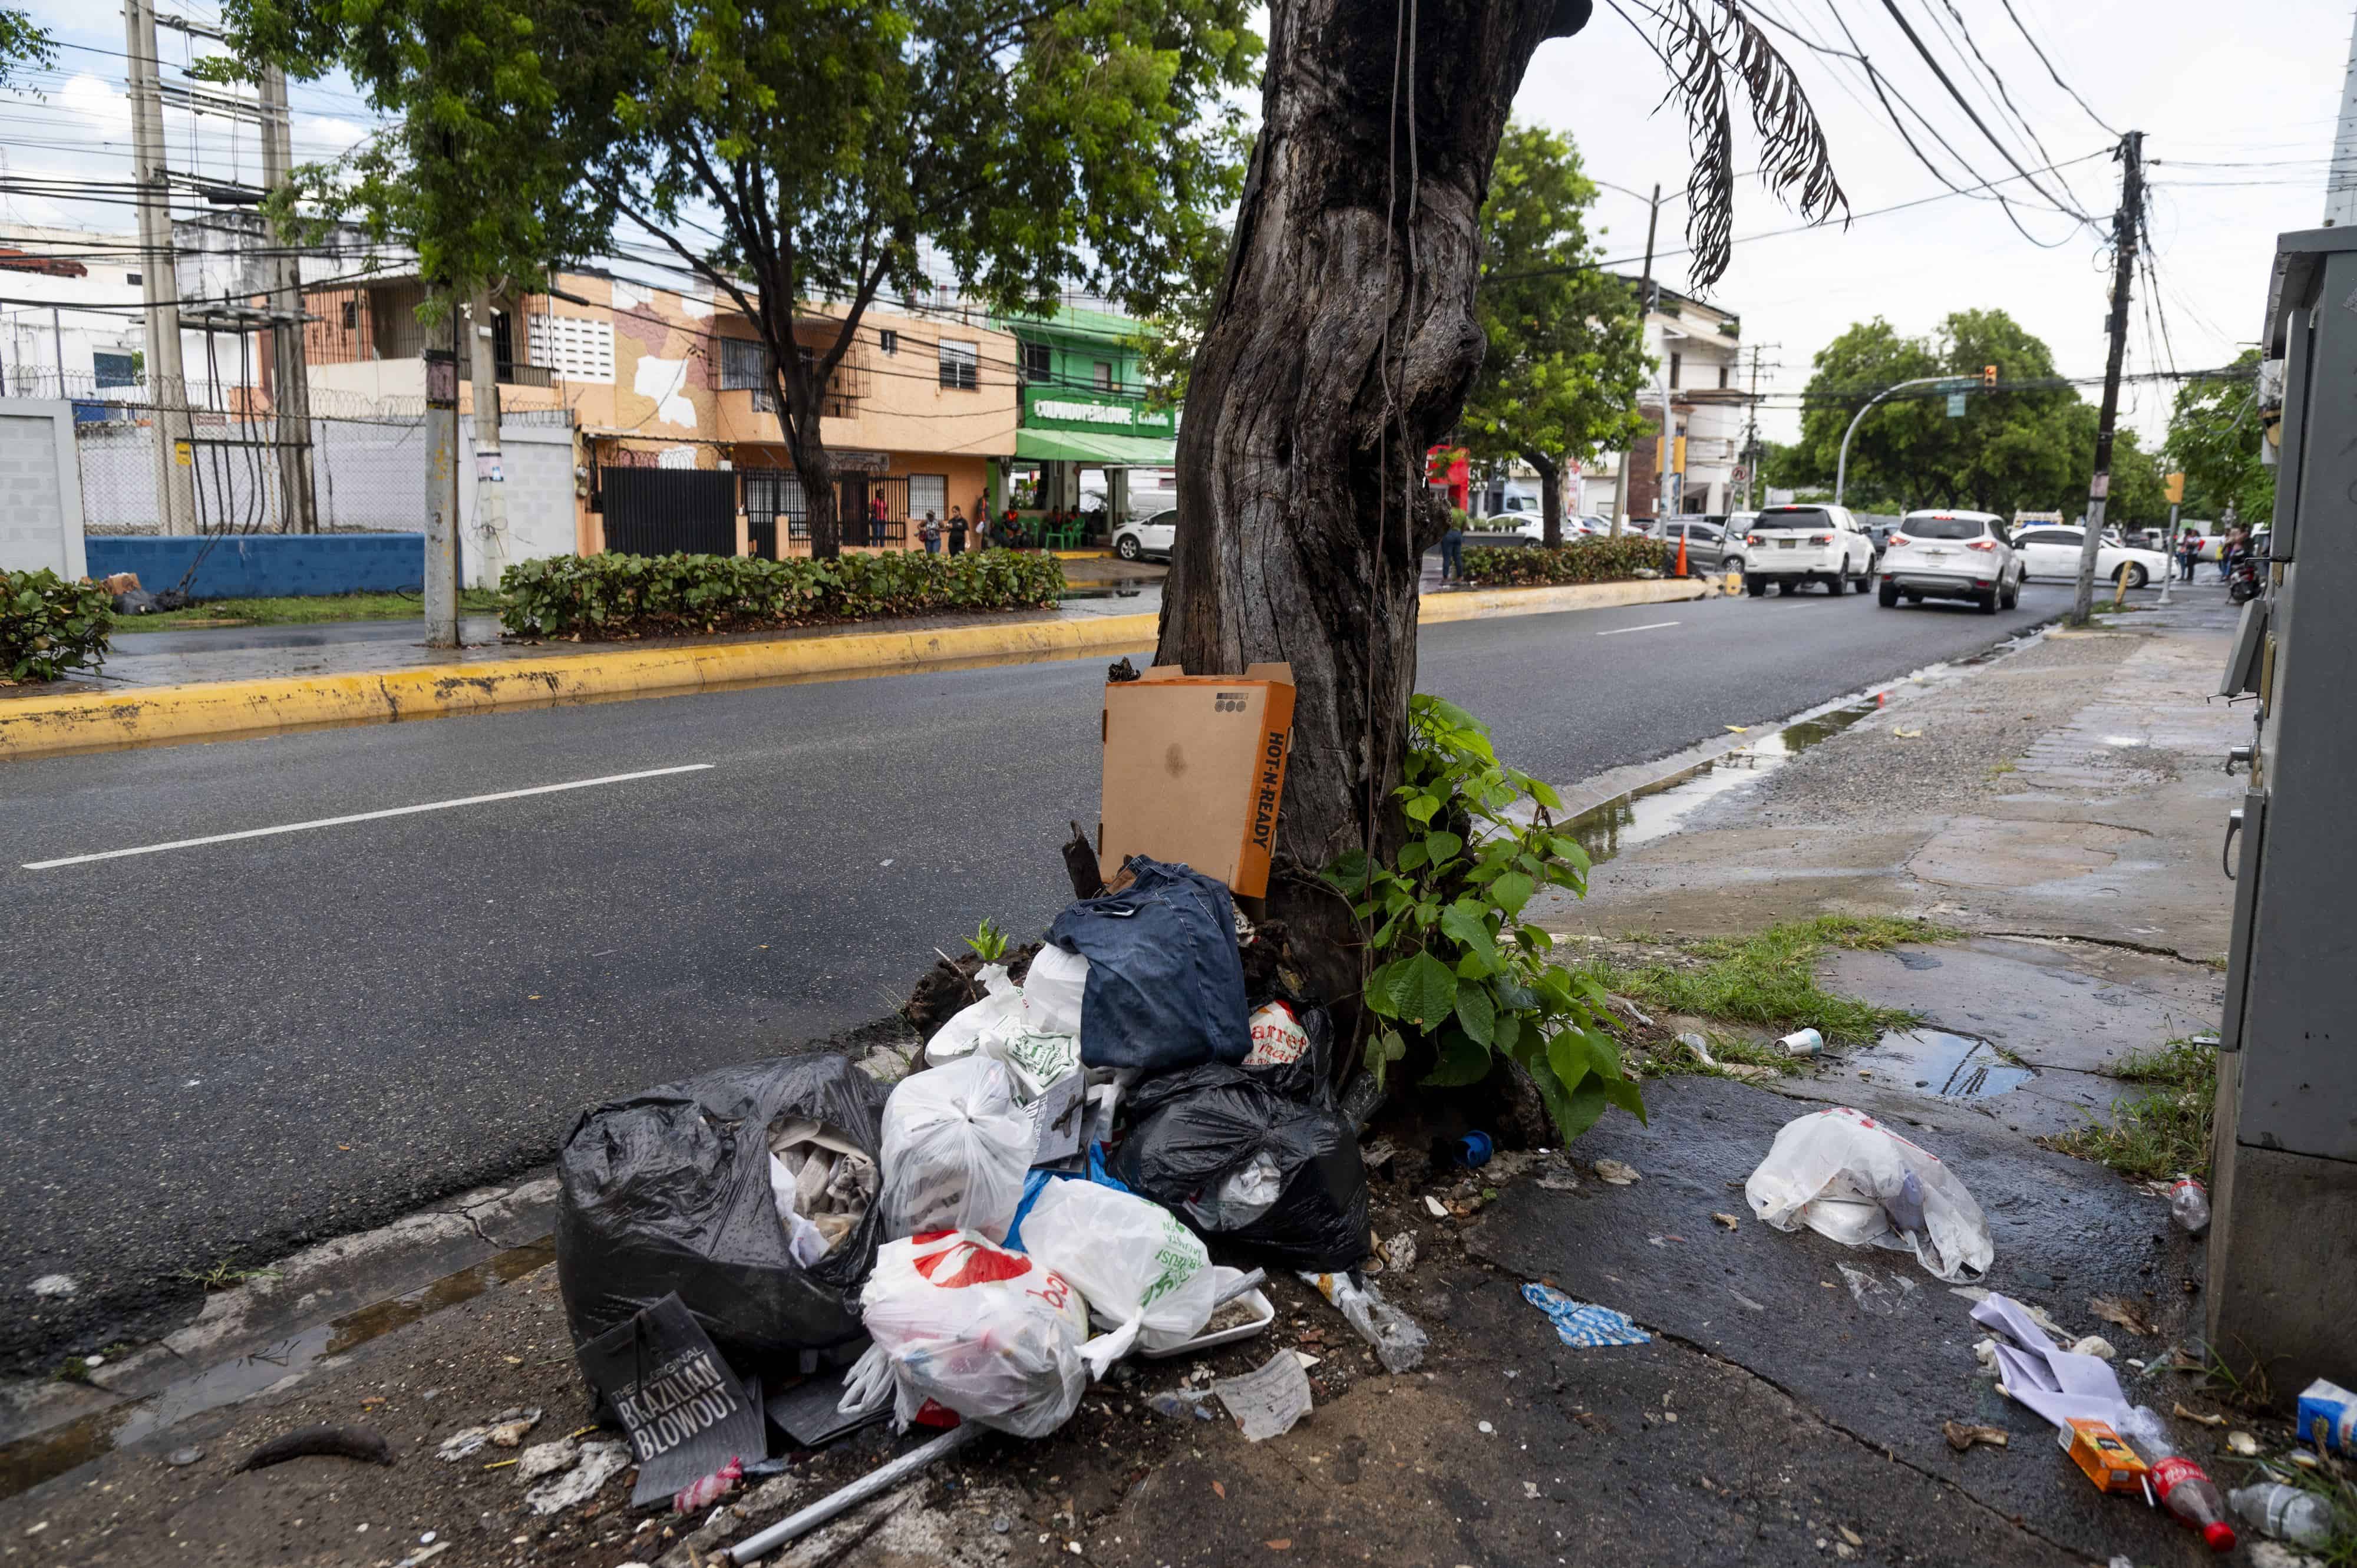 Vertedero improvisado. La basura se acumula en la avenida Rómulo Betancourt, en el sector Mirador Sur.  Los residentes allí han improvisado un botadero. Imagen captada el pasado viernes 6 de octubre.